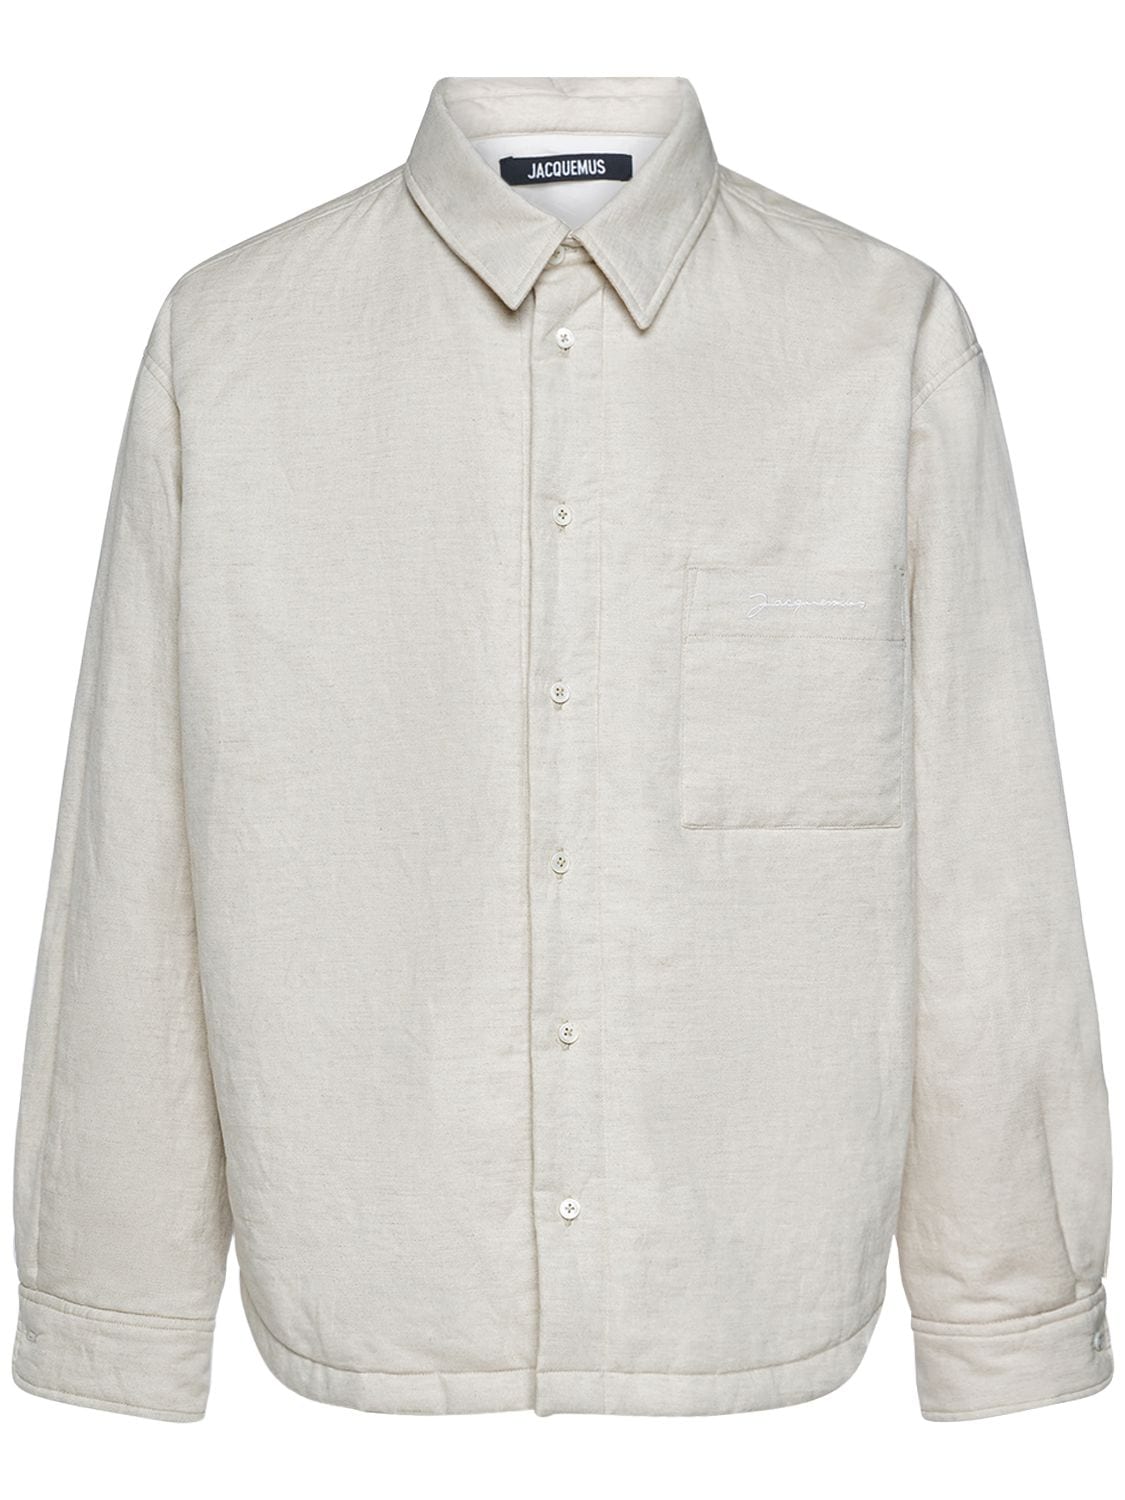 Jacquemus La Chemise Boulanger Cotton Shirt In Light Beige